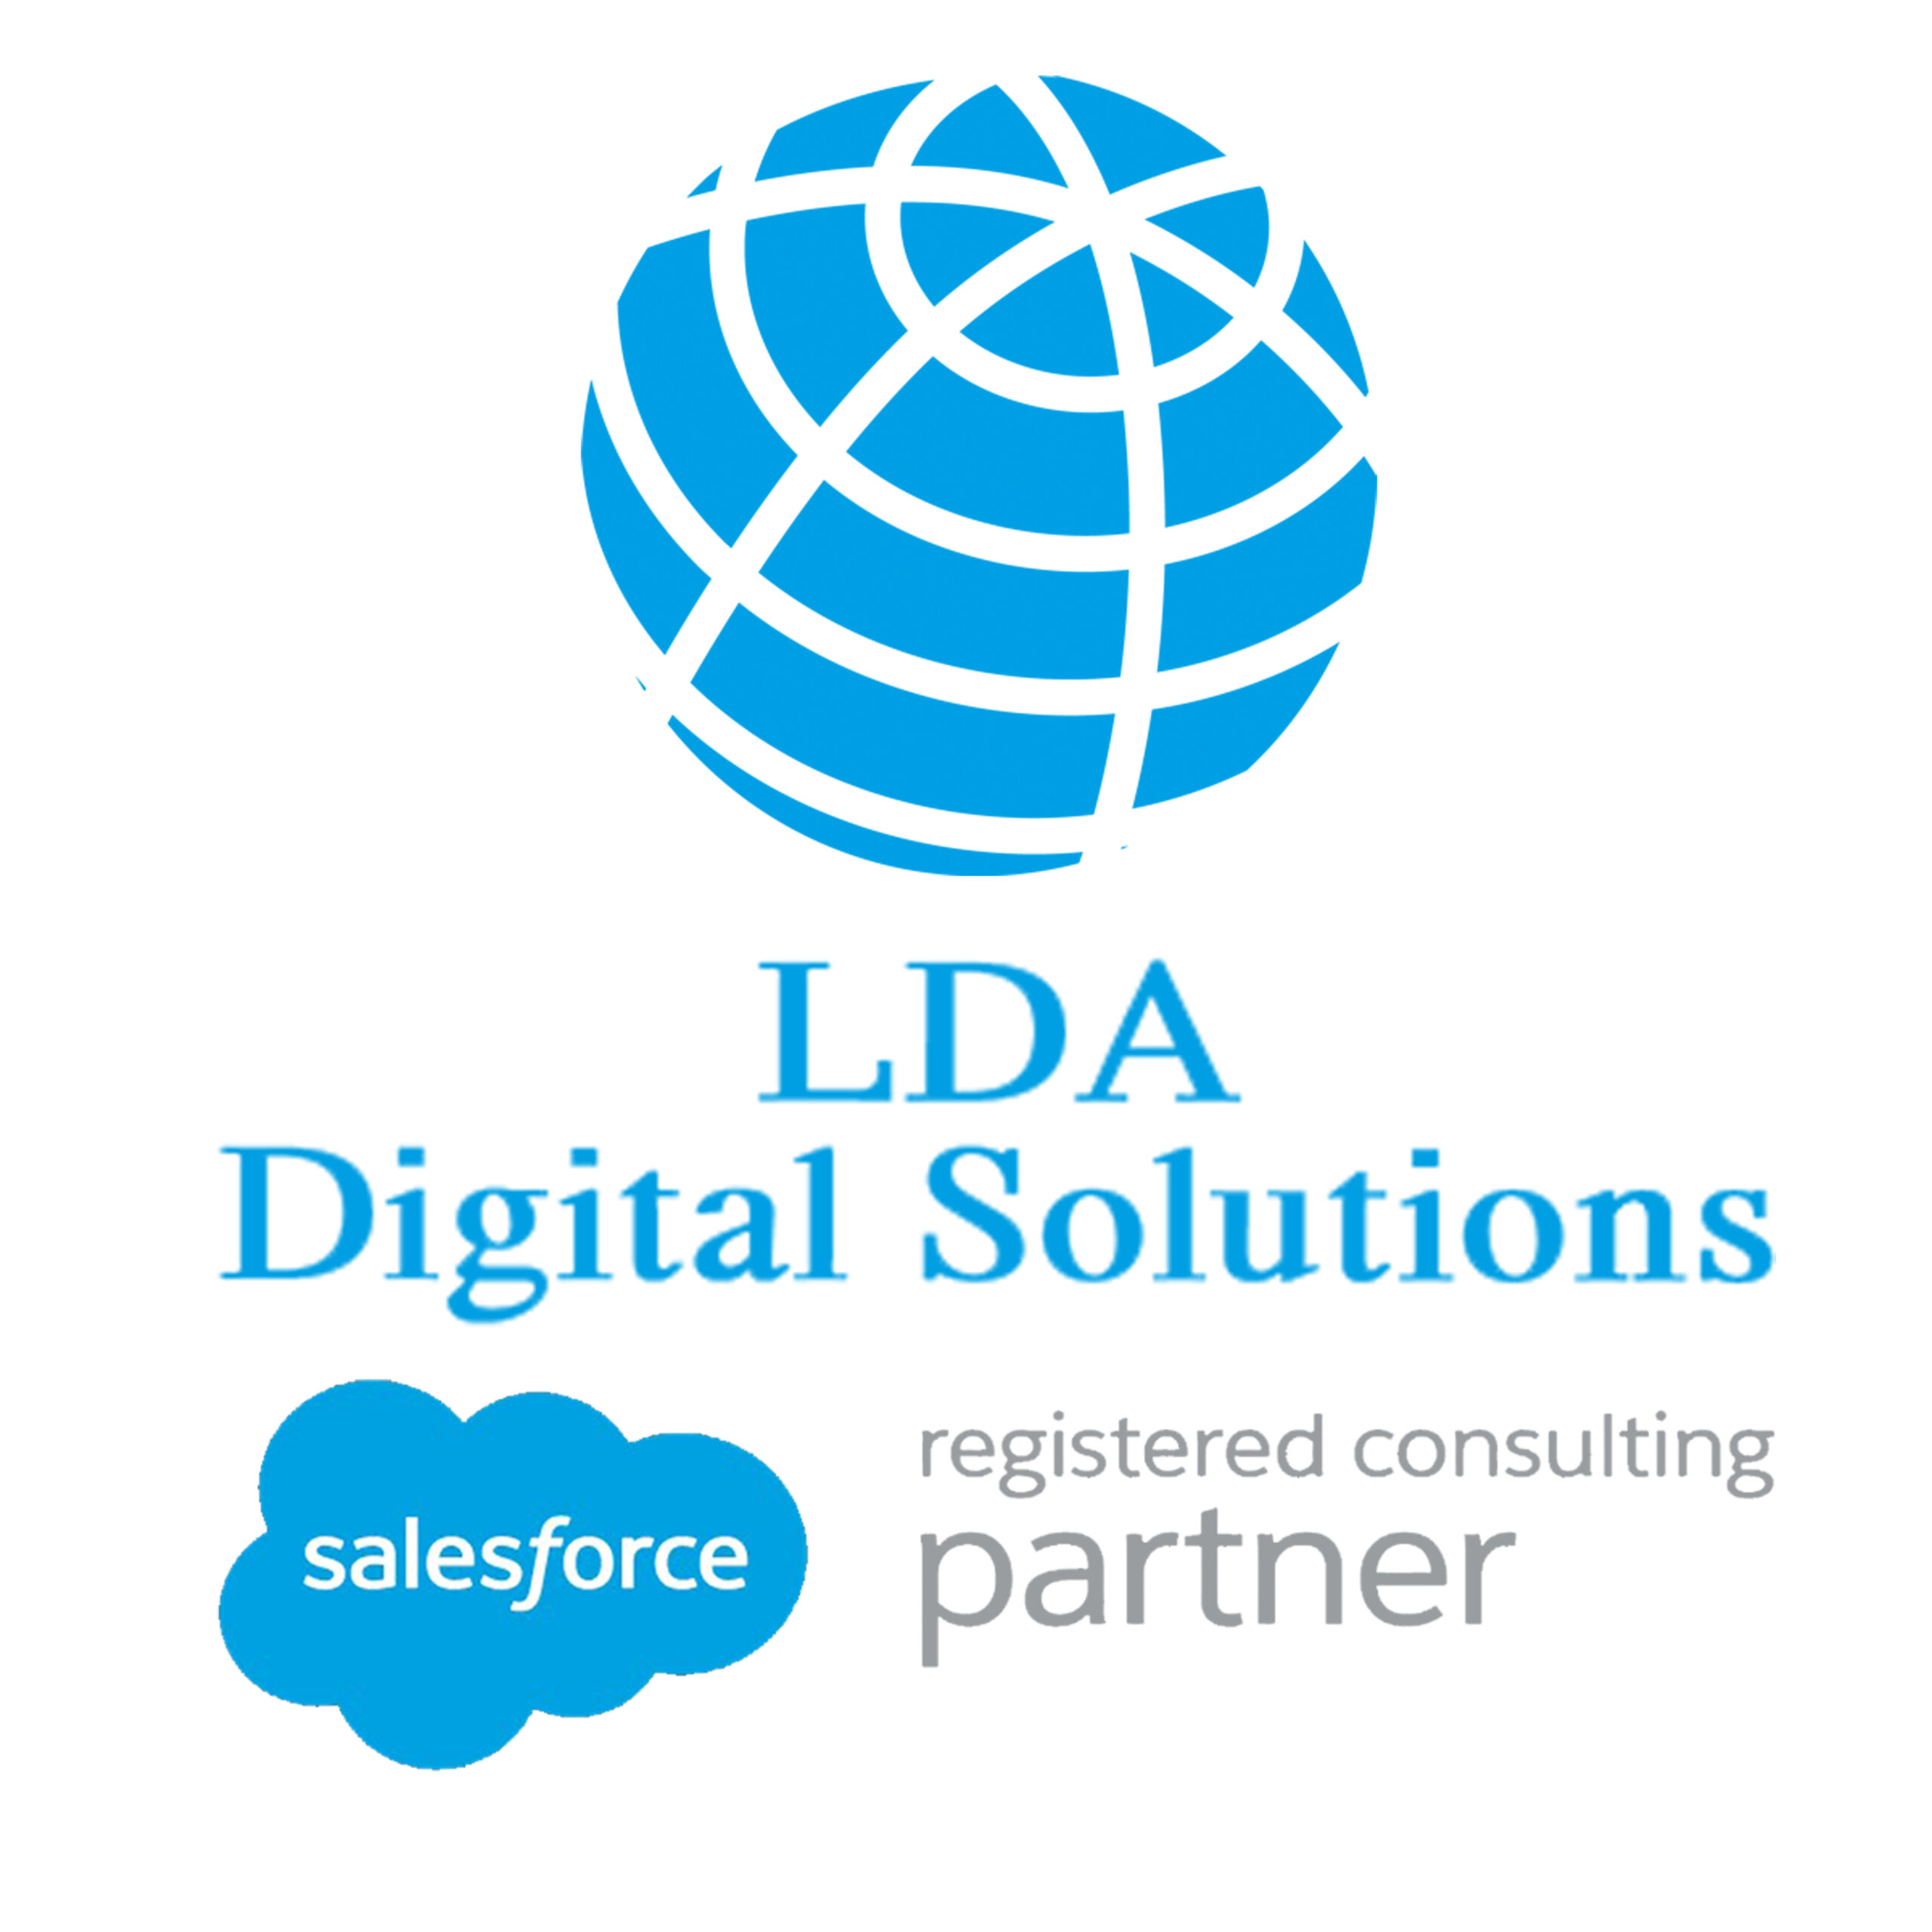 LDA Digital Solutions